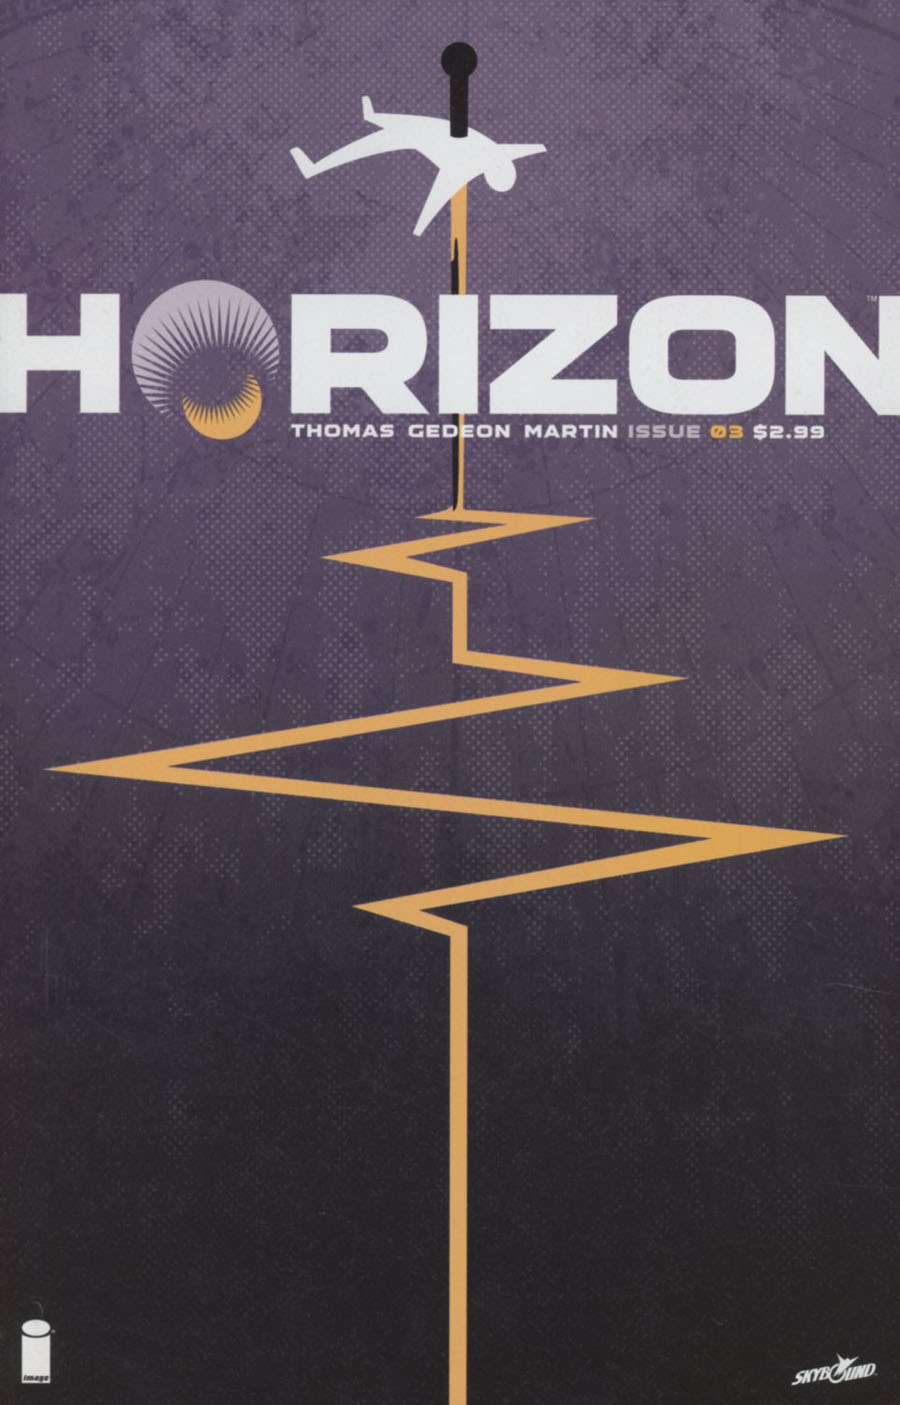 Horizon #3